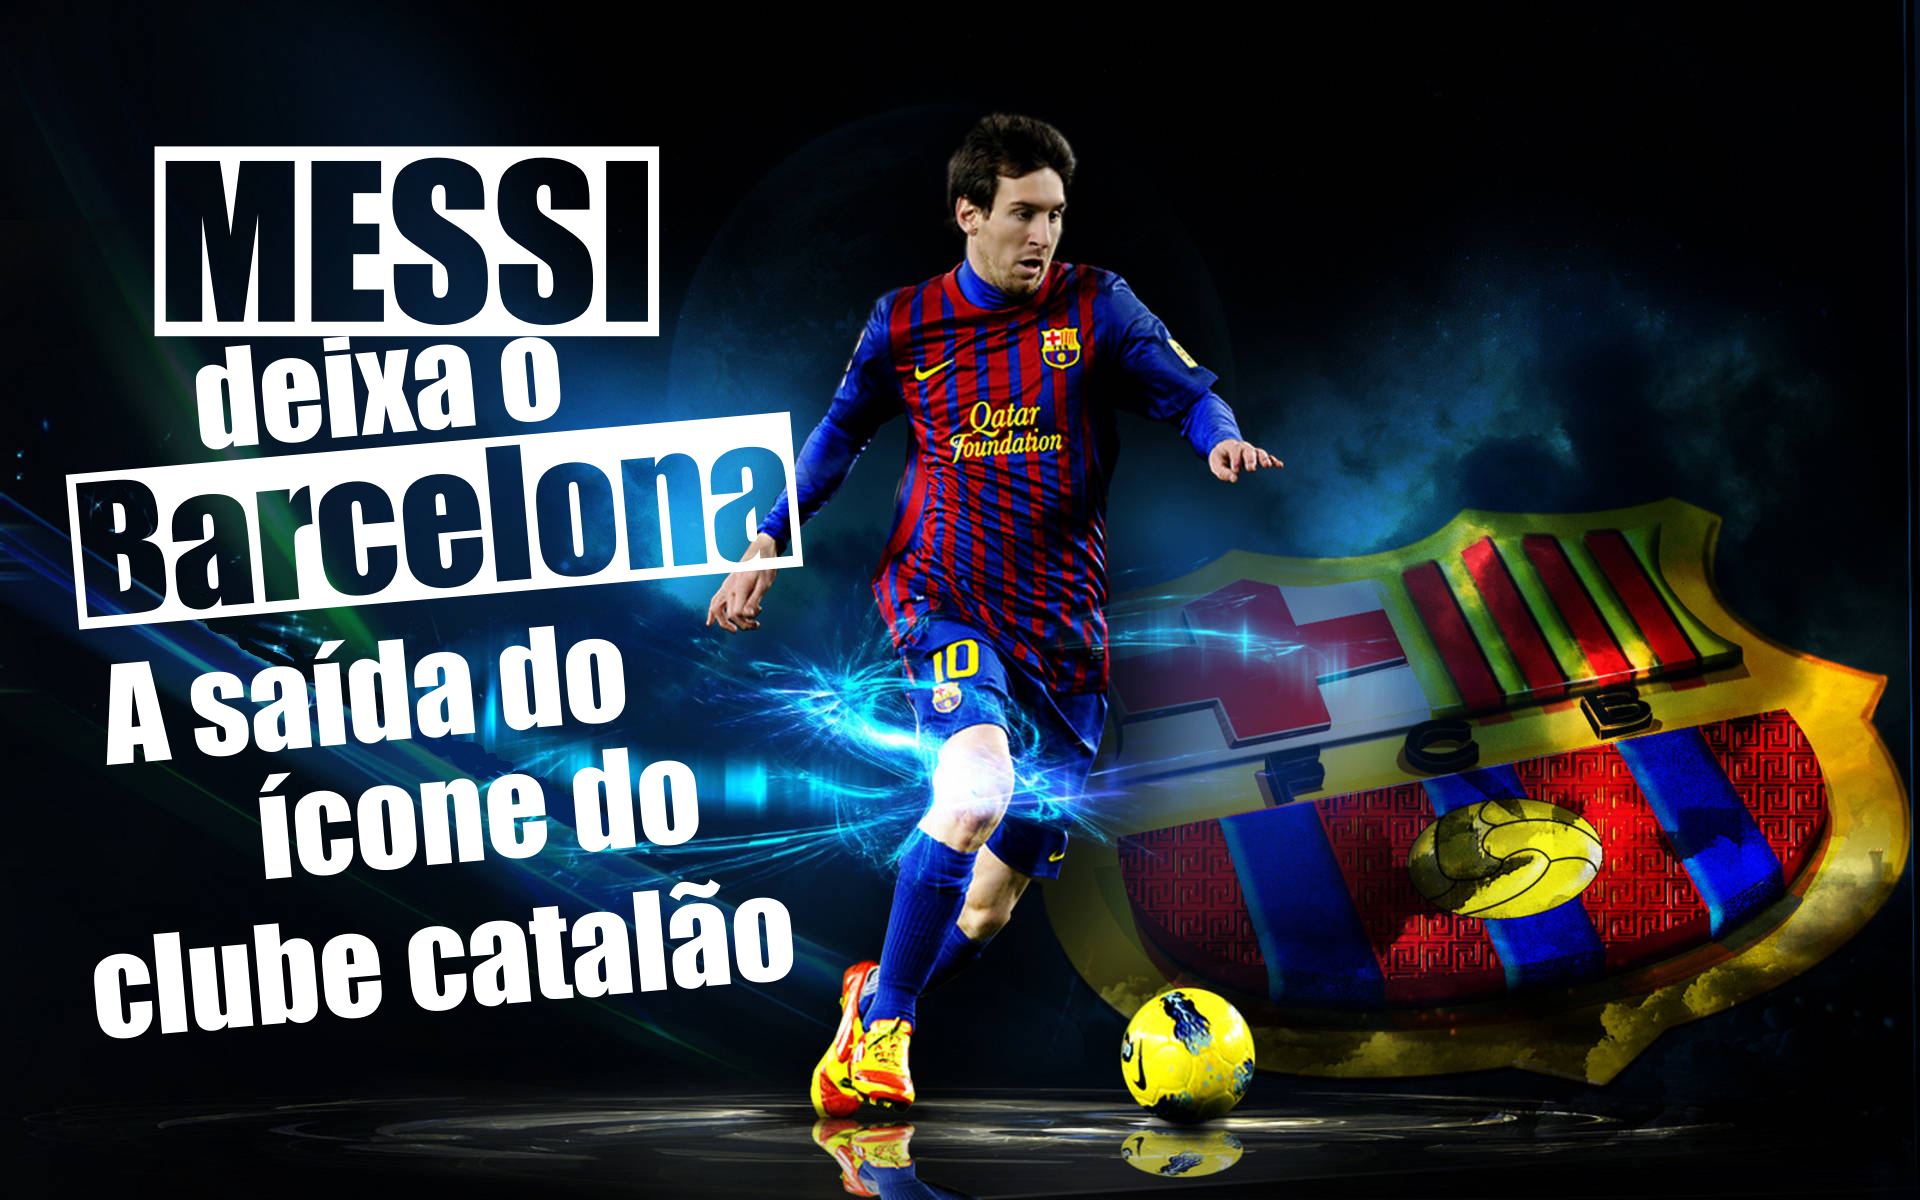 Messi deixa o Barcelona - A saída do ícone do clube catalão